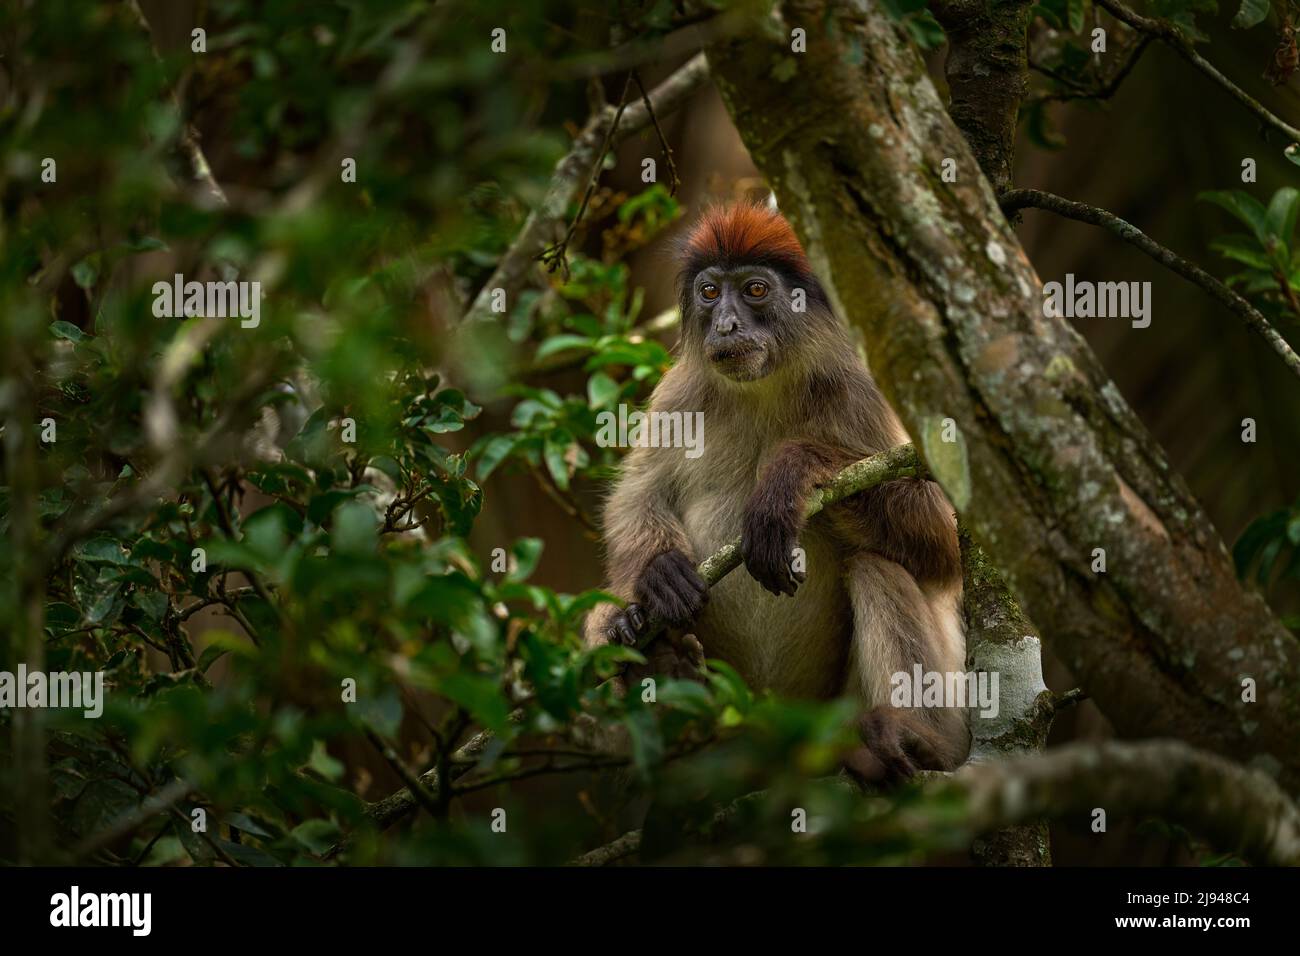 Colobús rojo ugandés, tefrosceles de Piliocolobus, mono gris cabeza rufa sentado en el tronco del árbol en el bosque tropical. Colobus rojo en hábitat de vegetación, KiB Foto de stock